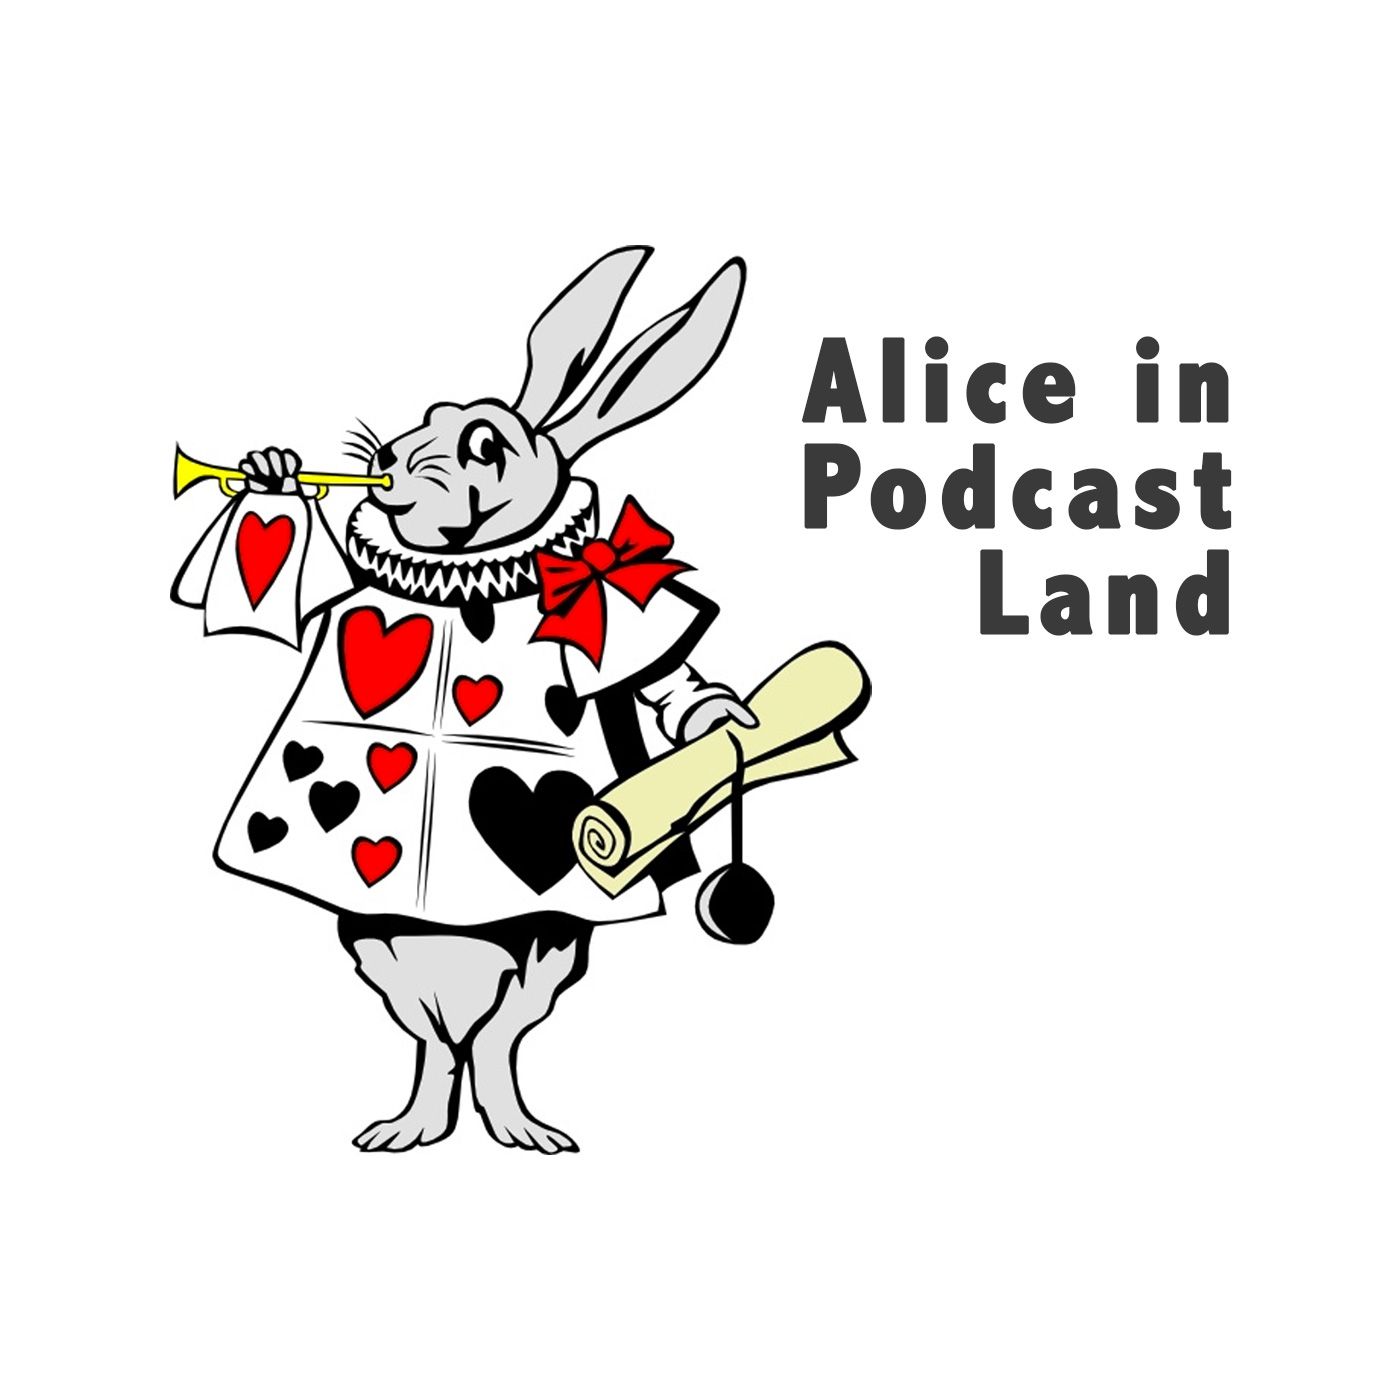 Alice in Podcast Land